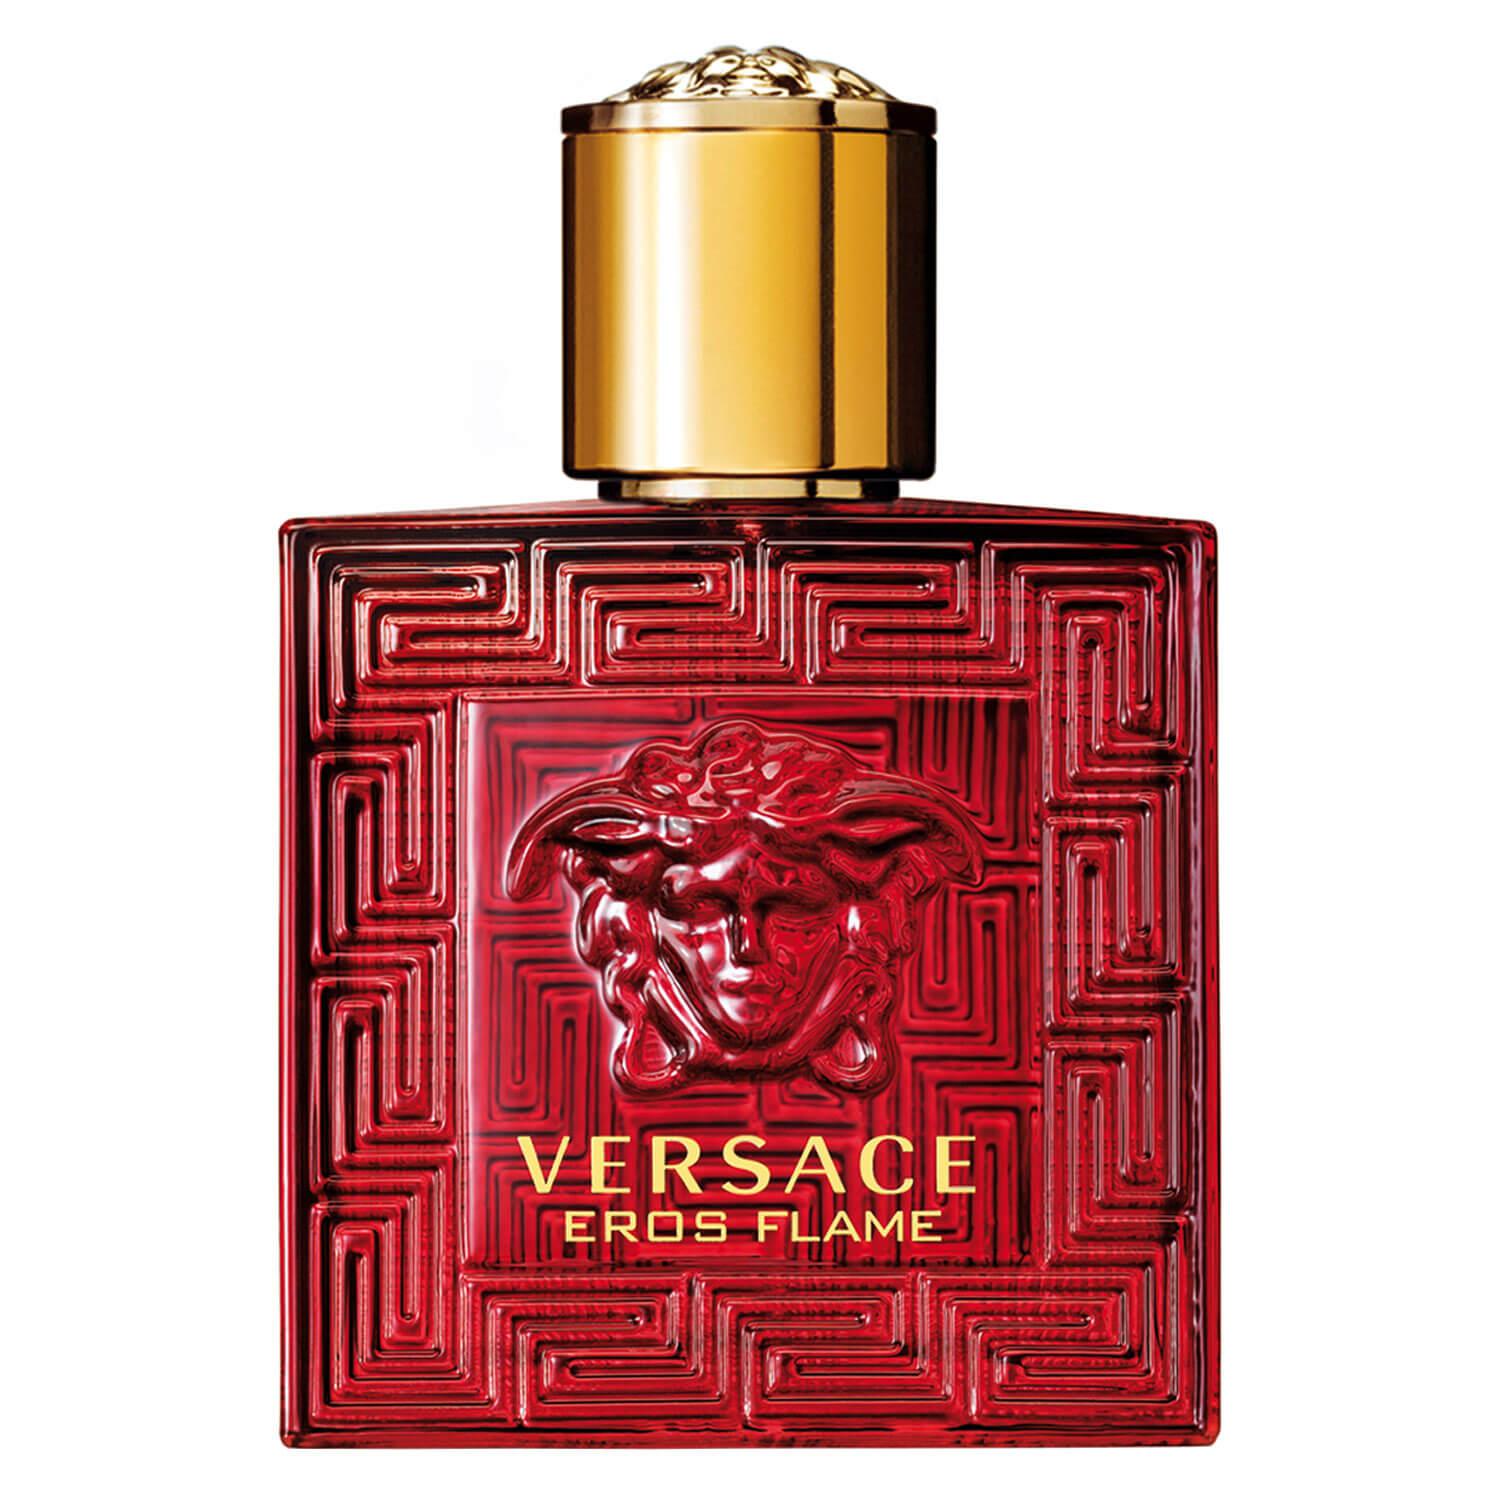 Versace Eros - Flame Eau de Parfum Natural Spray